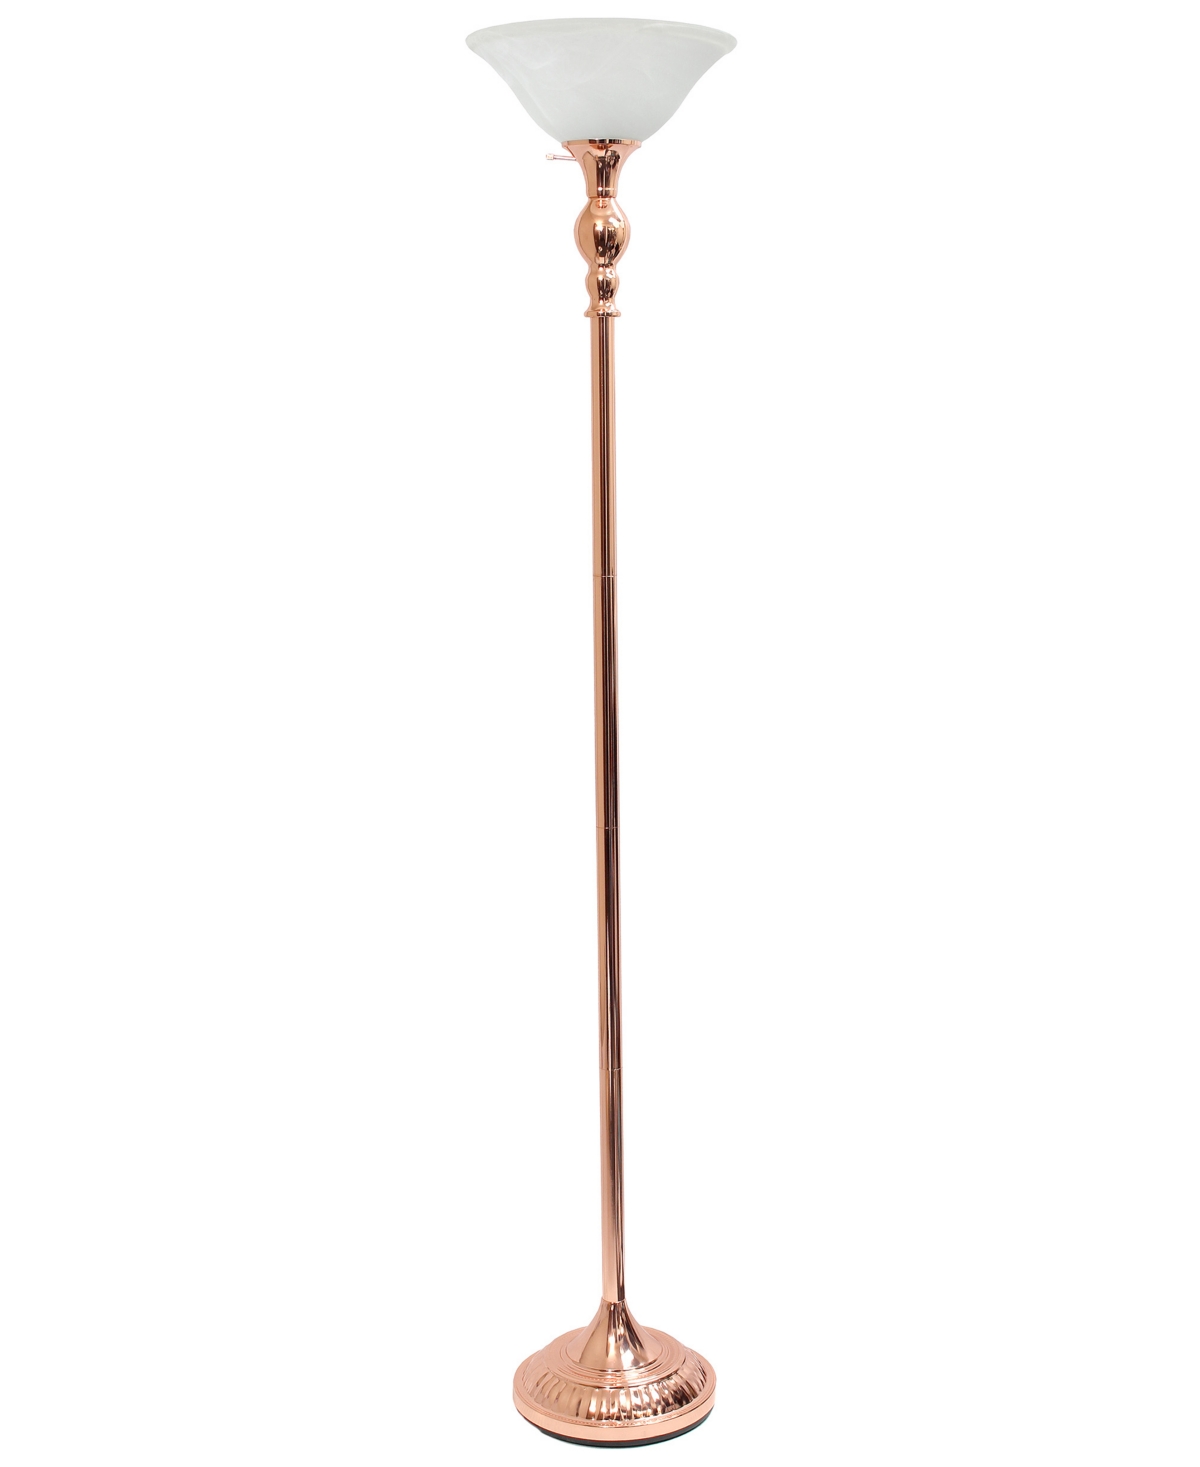 Elegant Designs 1 Light Torchiere Floor Lamp In Rose Gold-tone